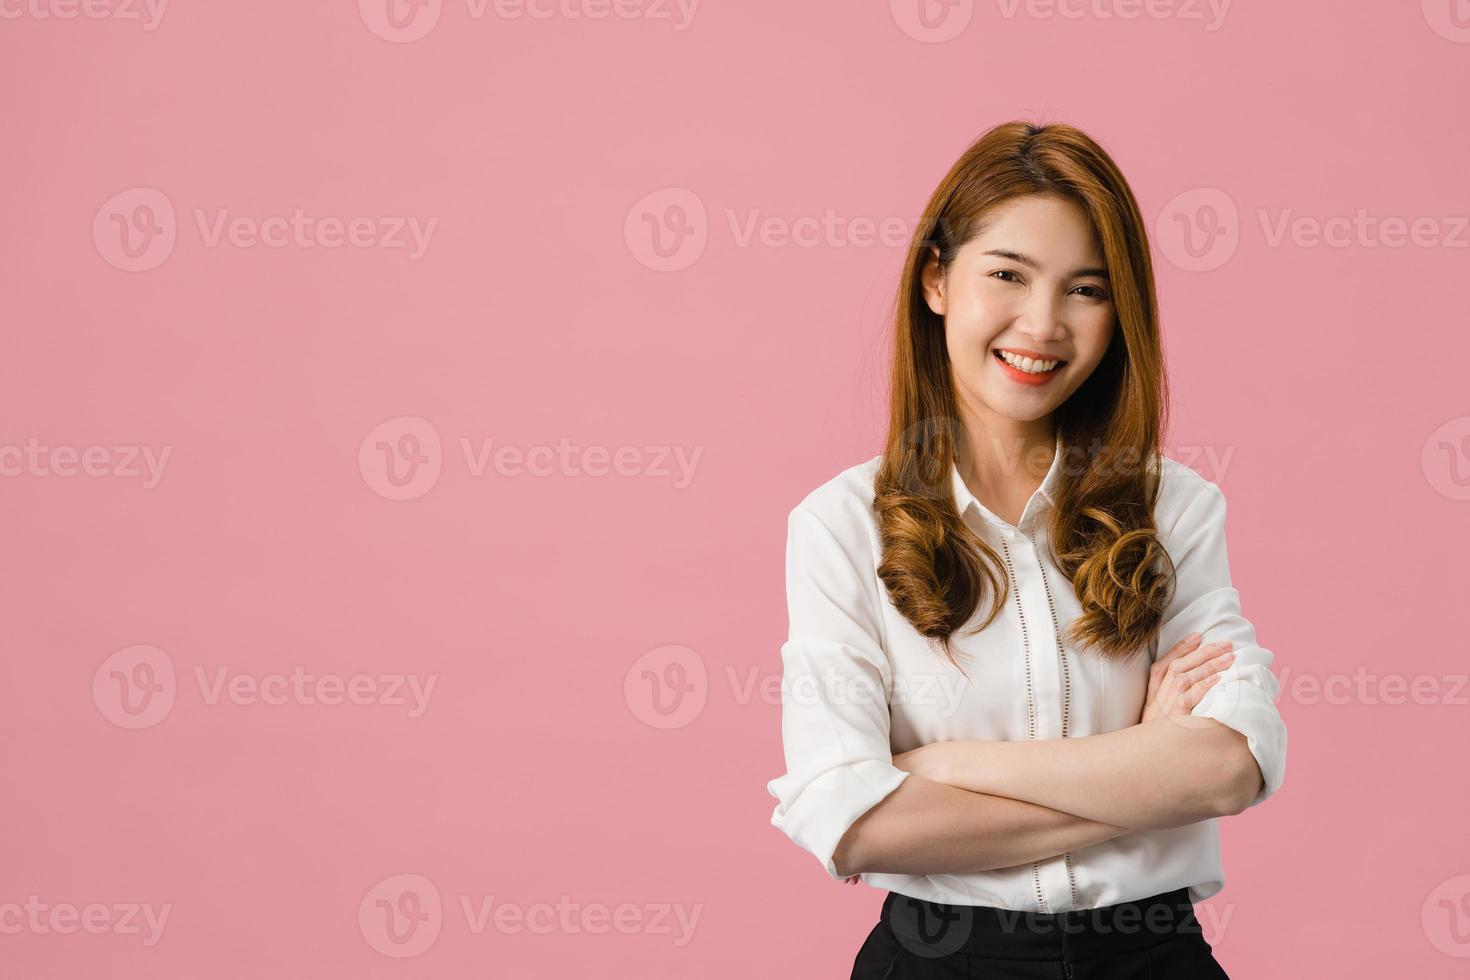 portret van jonge Aziatische dame met positieve uitdrukking, armen gekruist, breed glimlachen, gekleed in casual kleding en camera kijken over roze achtergrond. gelukkige schattige blije vrouw verheugt zich over succes. foto